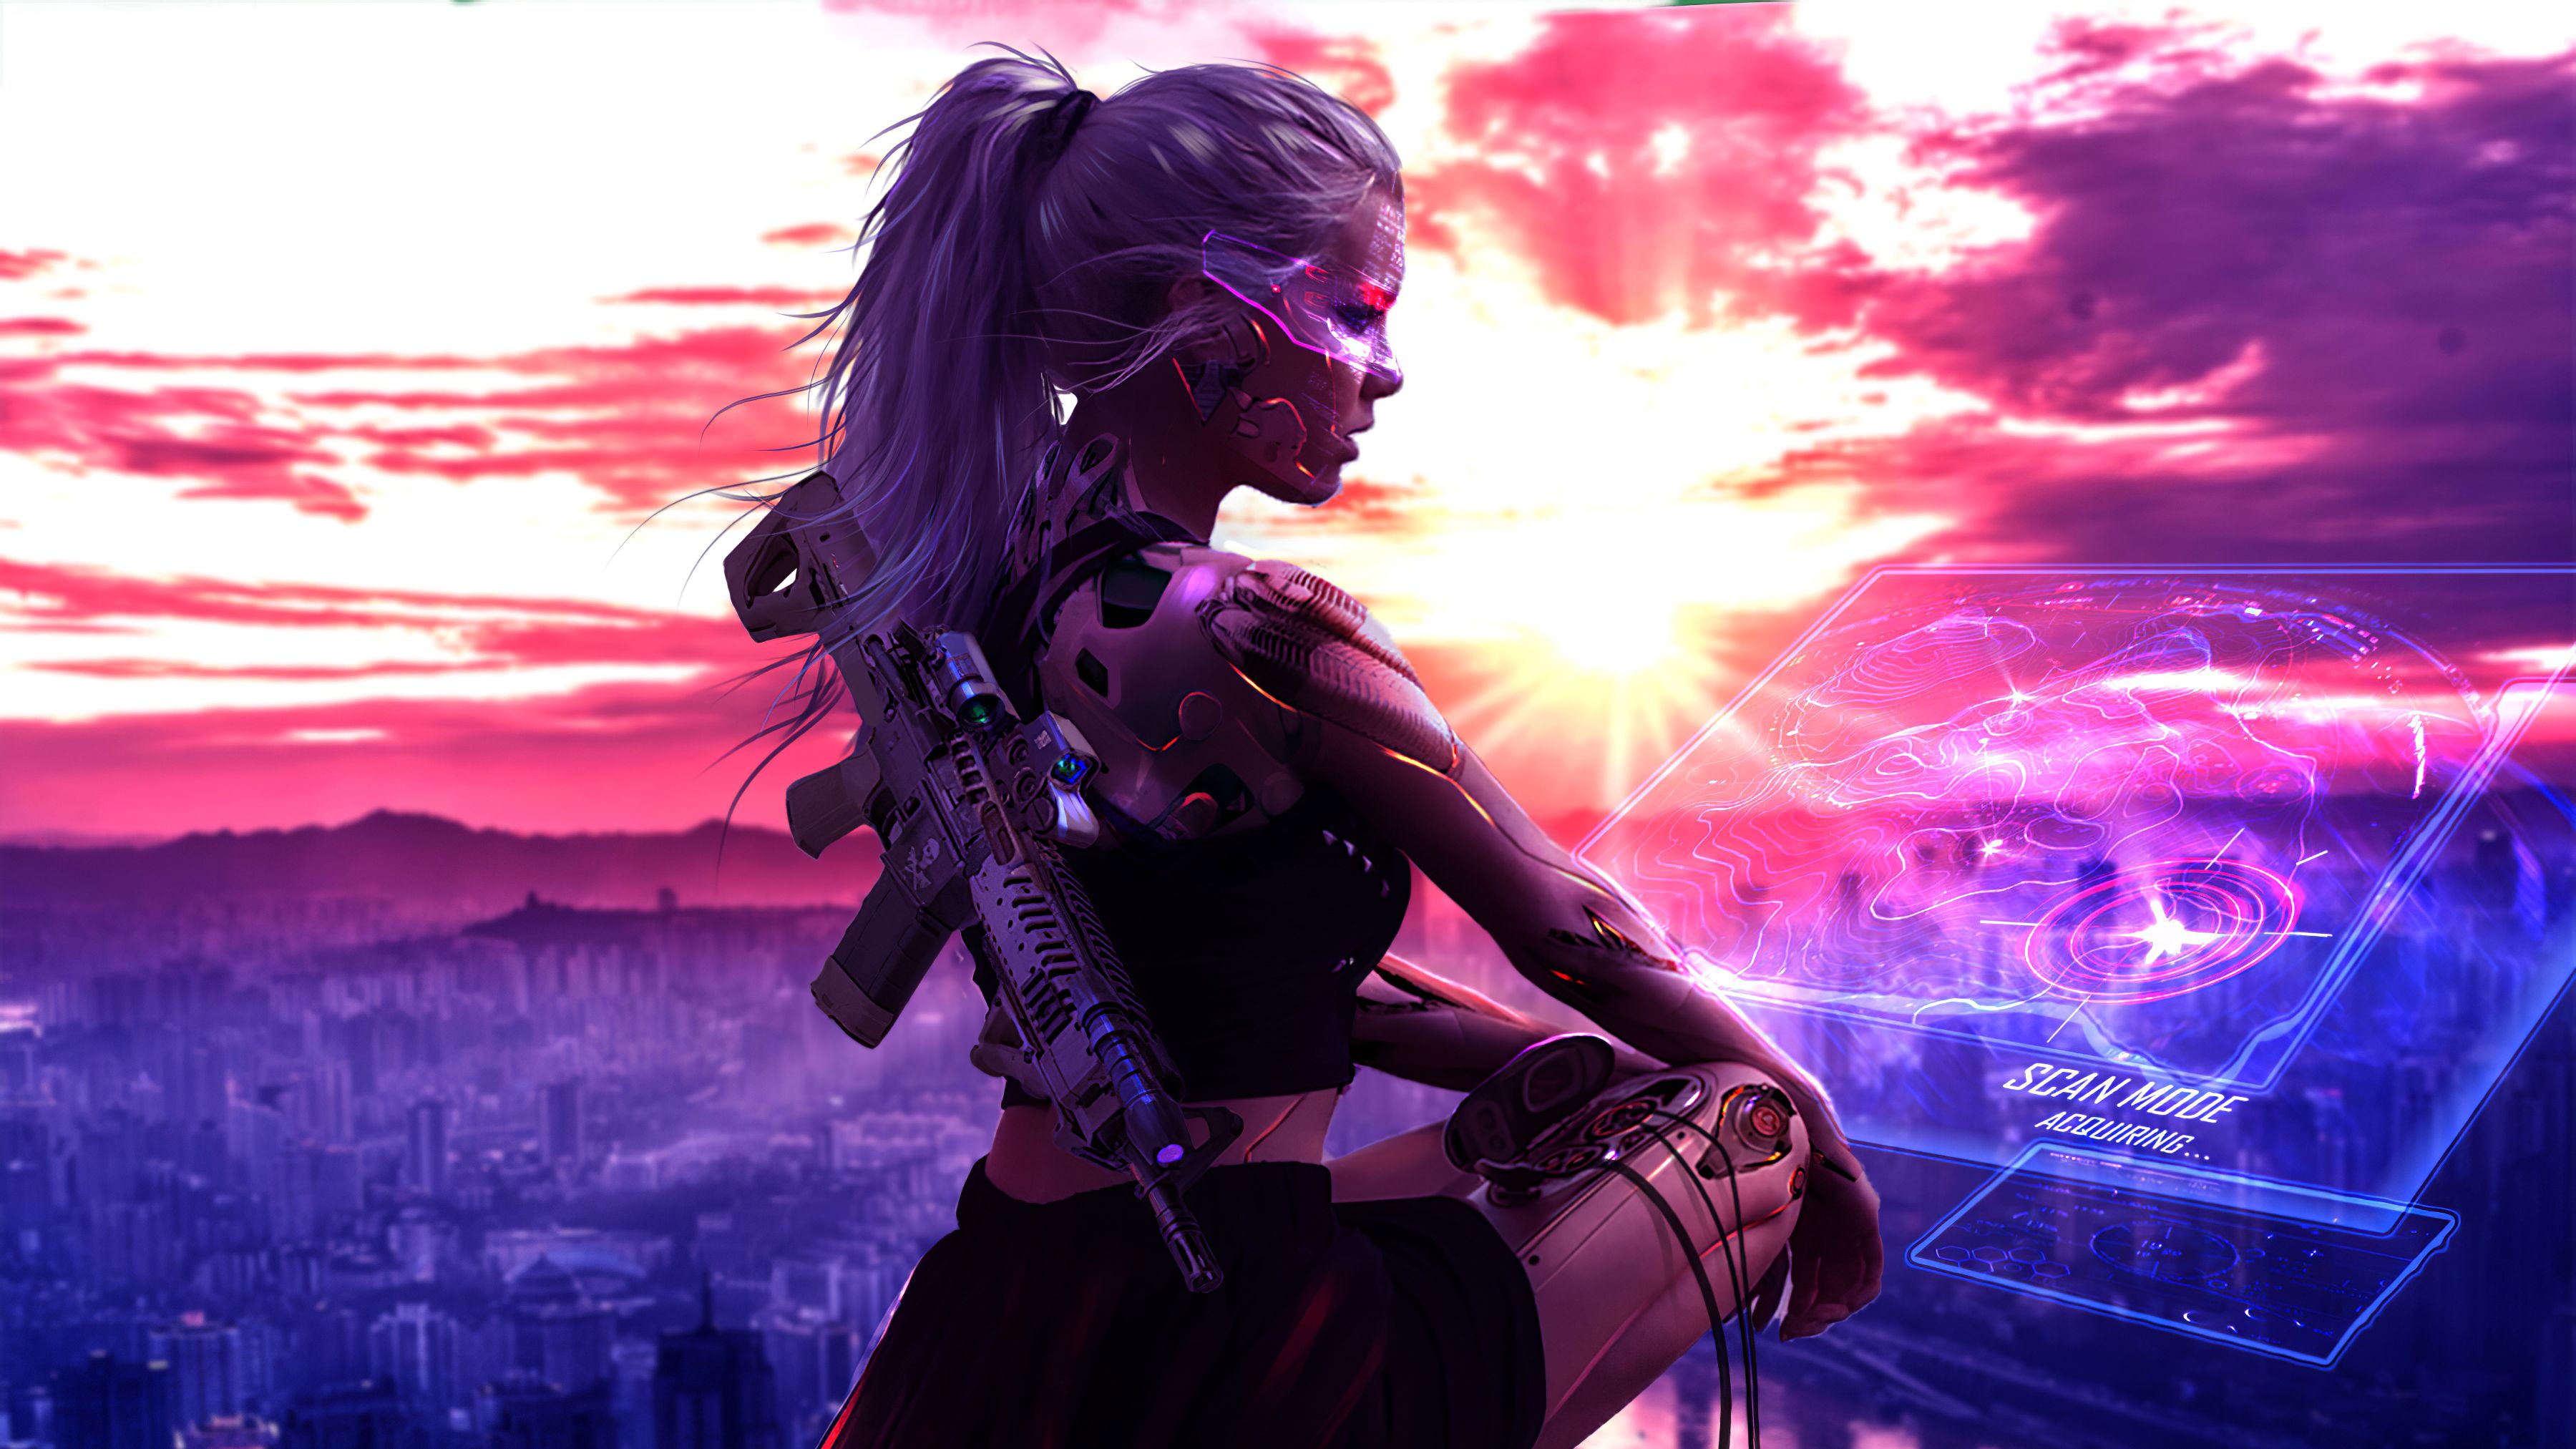 Cyberpunk Girl With Gun 4k Artwork, HD Artist, 4k Wallpapers, Image, Backgr...